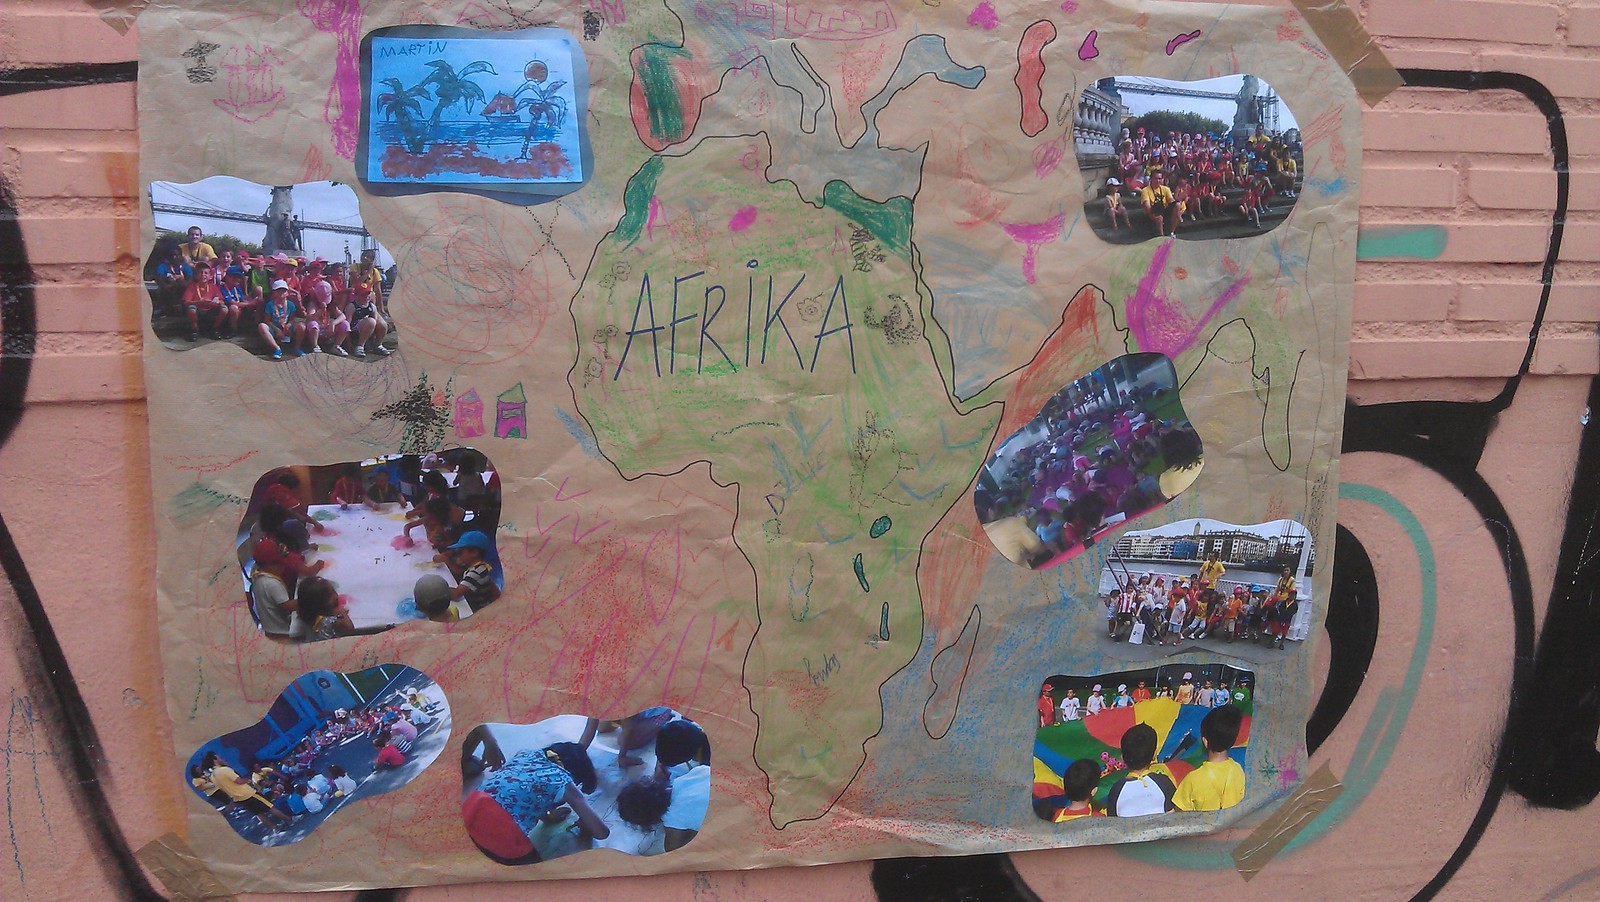 29/06/12 El mural de África // Afrikako murala